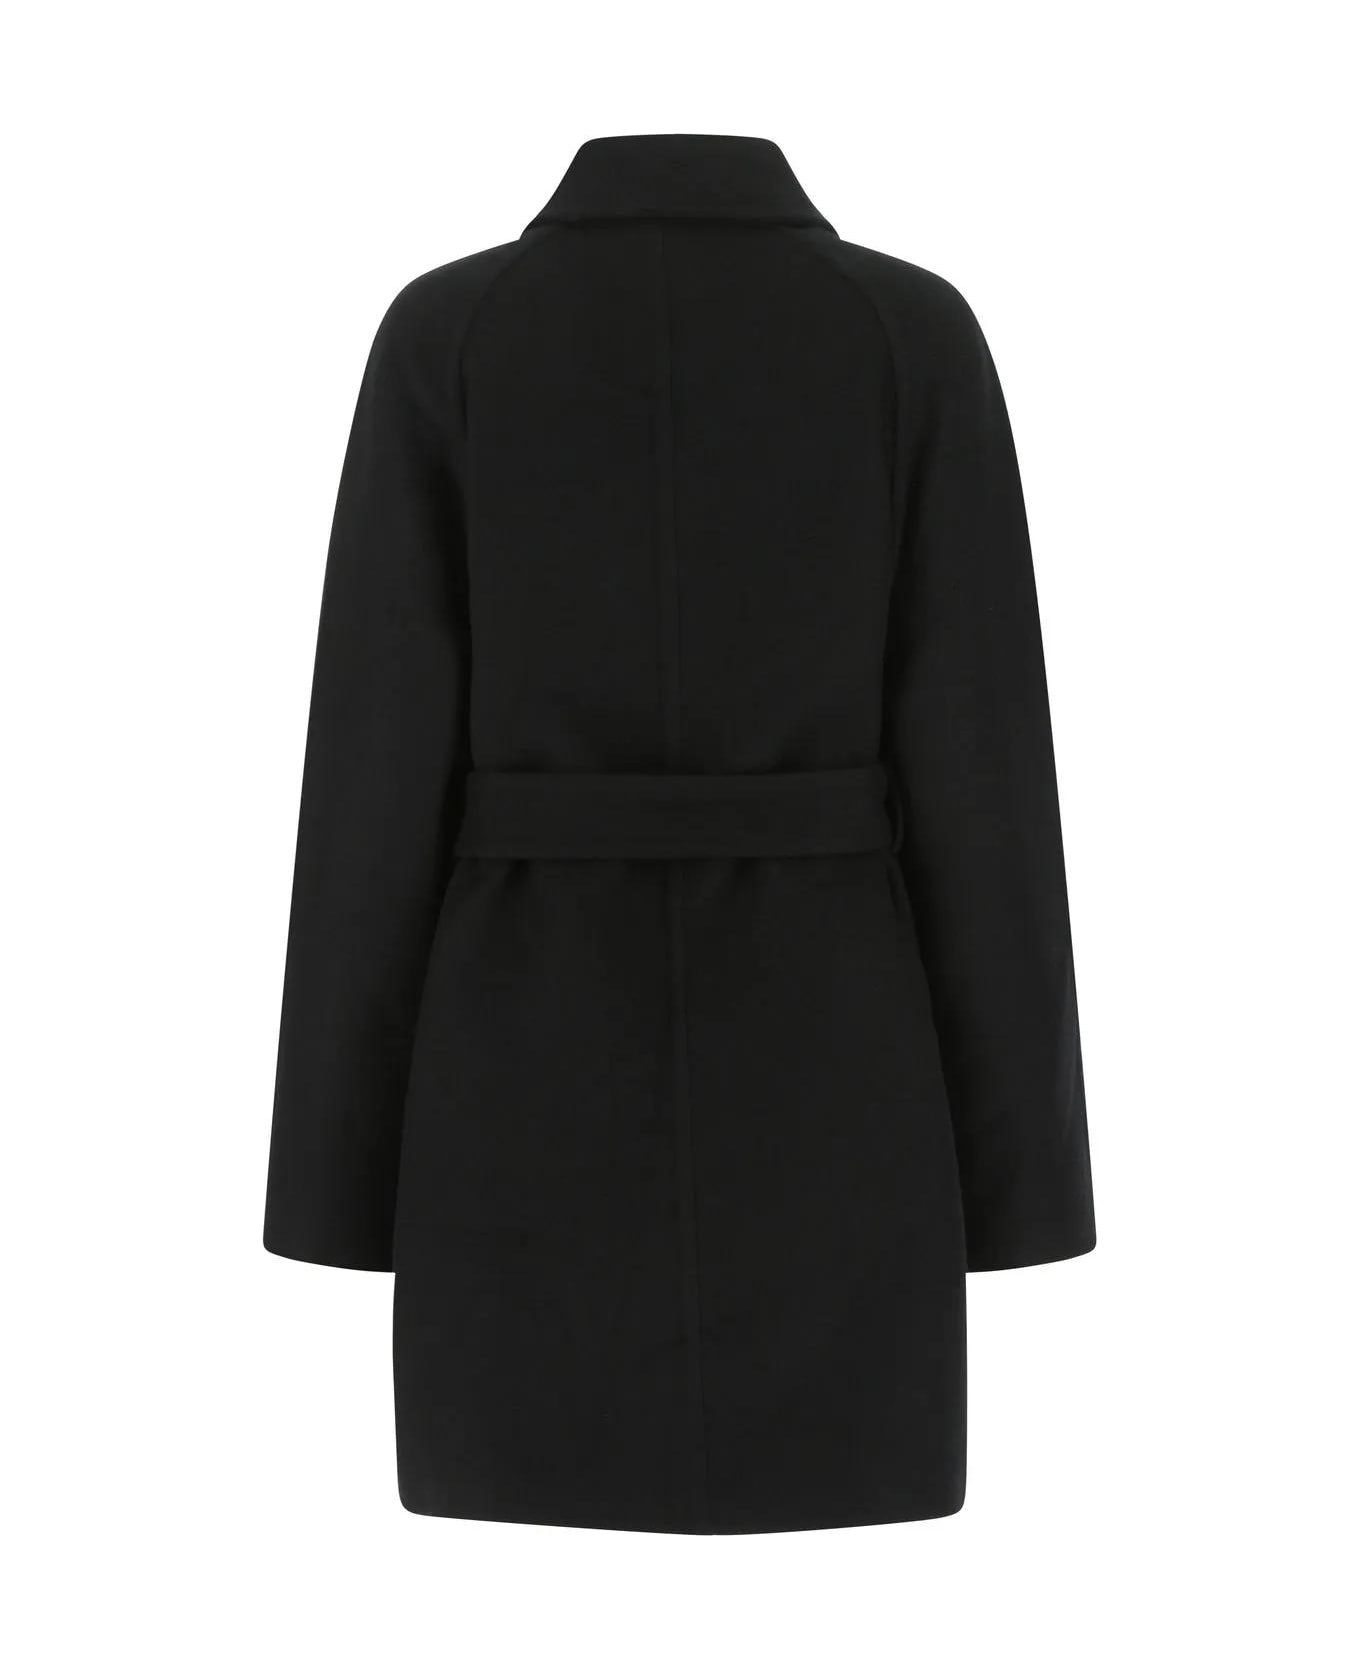 Givenchy Black Wool Blend Coat - Black